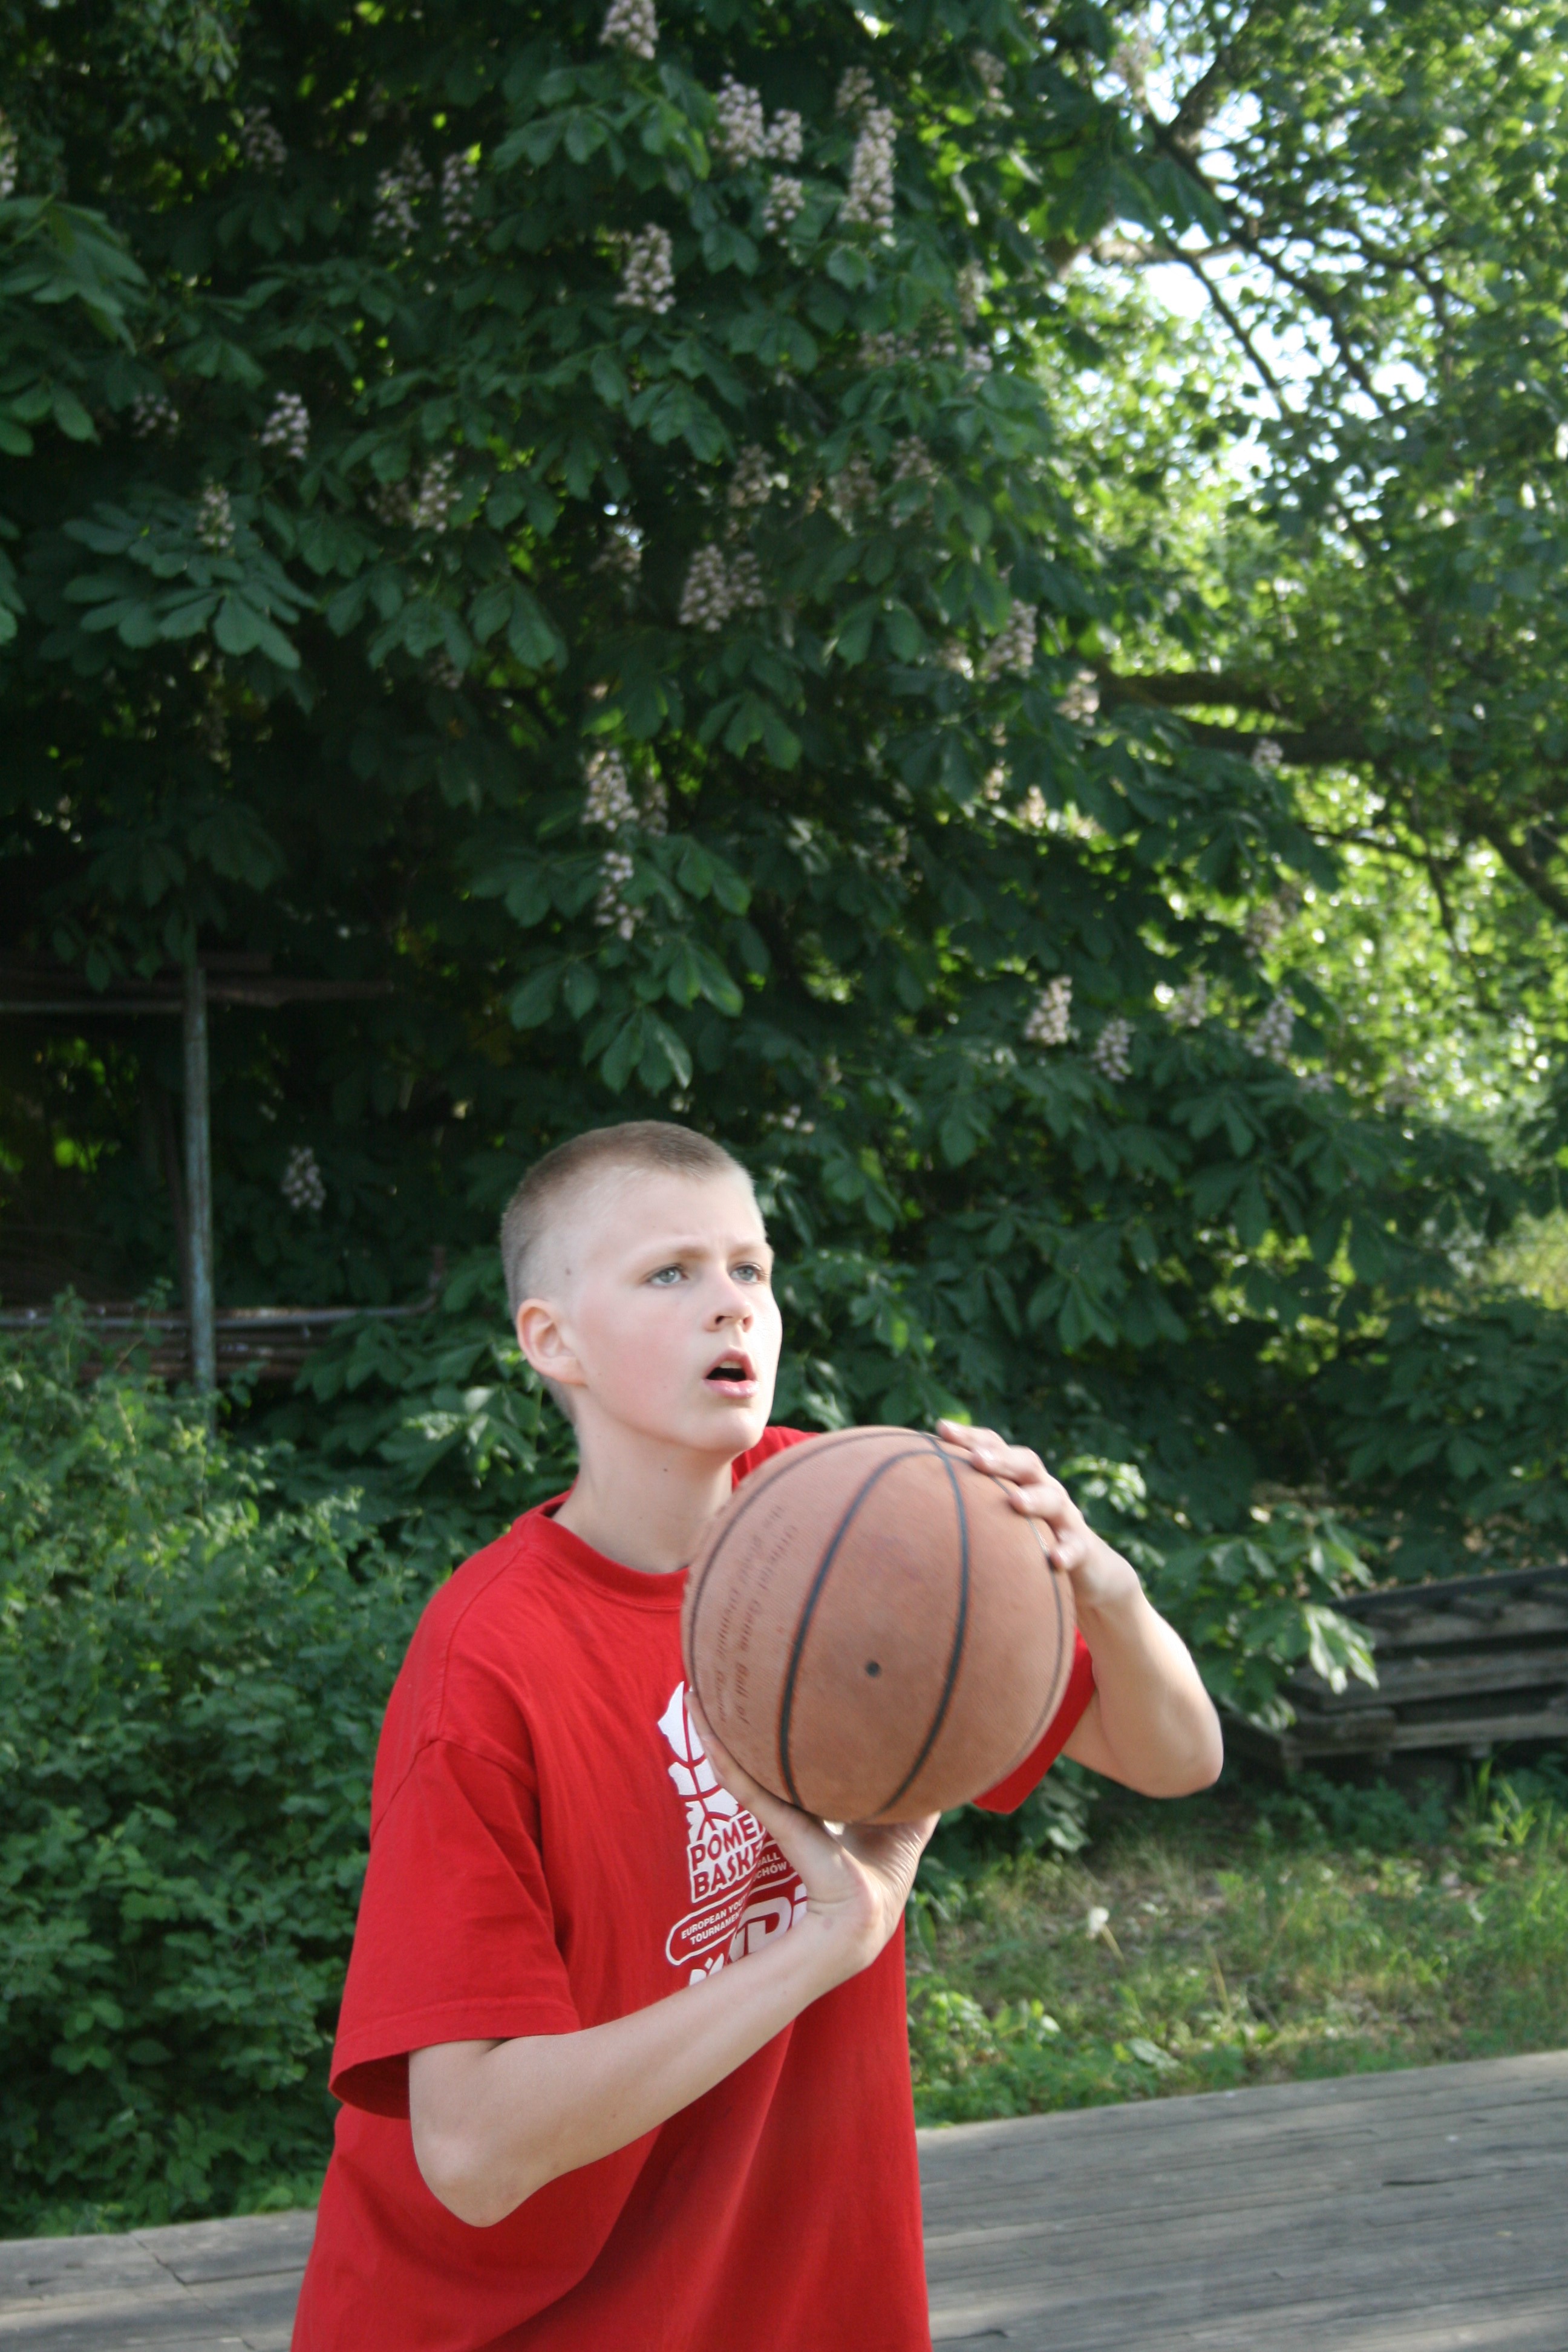 Porziņģi: kā izaudzināt basketbola zvaigzni jeb īsa pamācība basketbola mīlestībā!